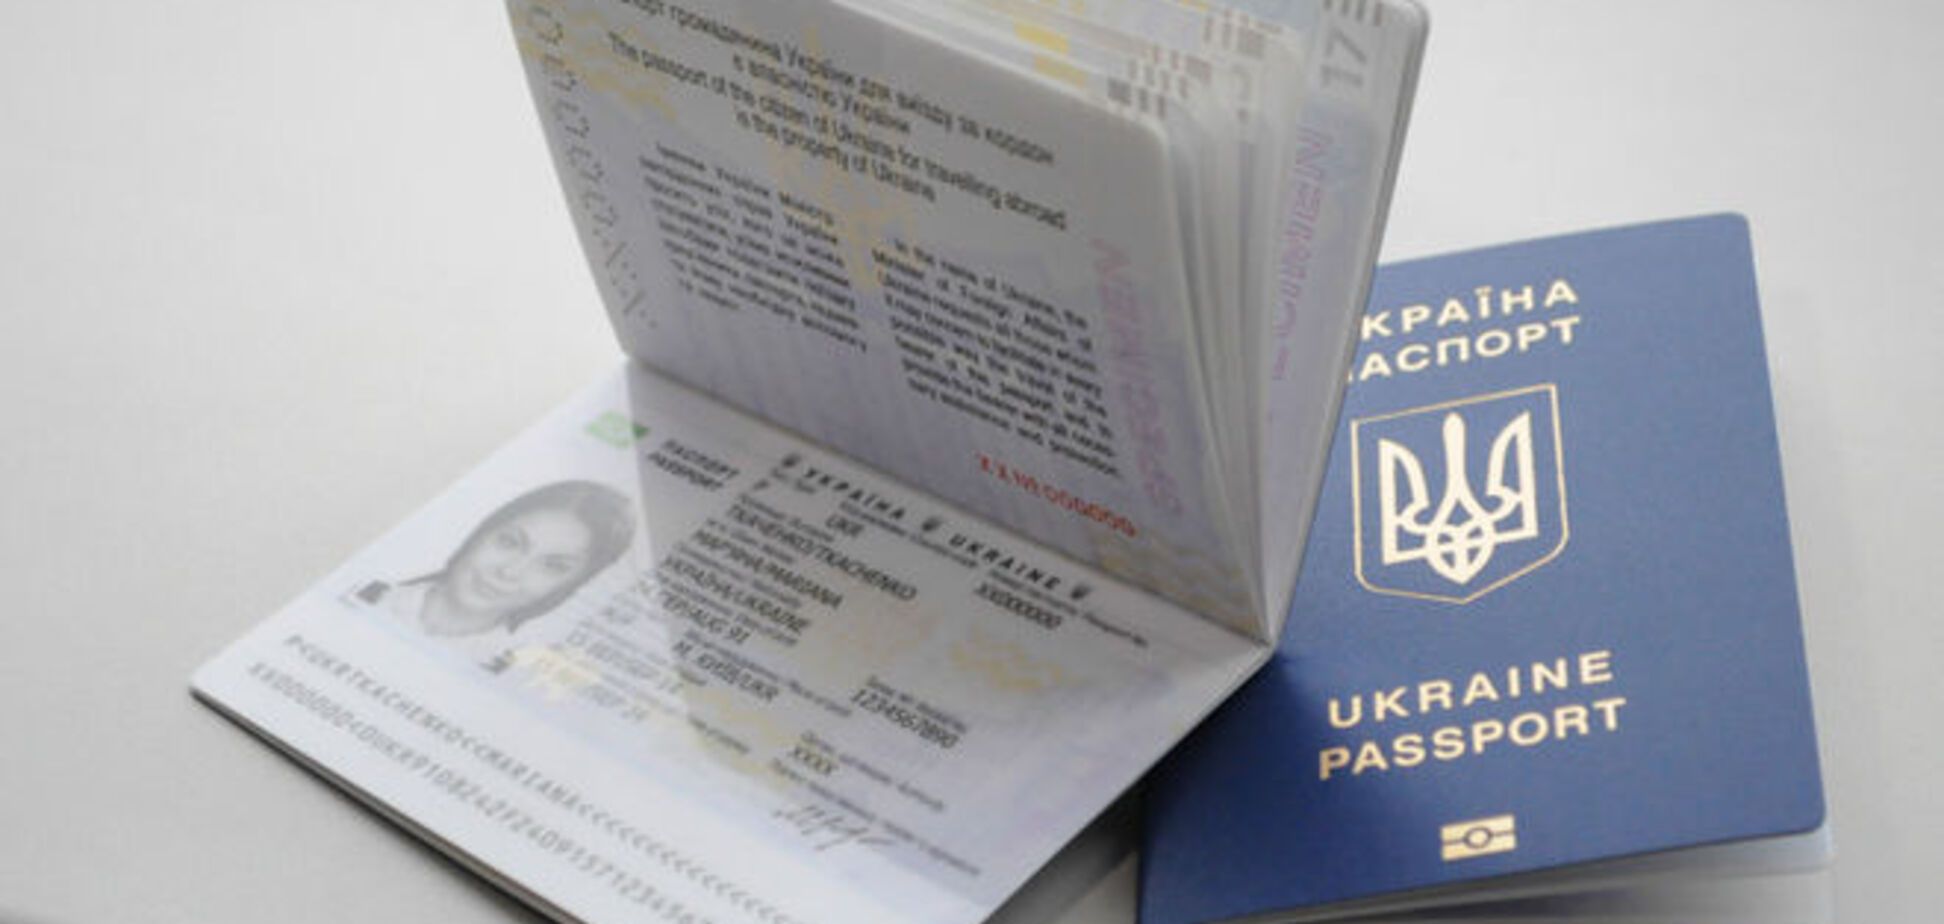 'Биометрика' вышла из строя: печатать паспорта будут дольше